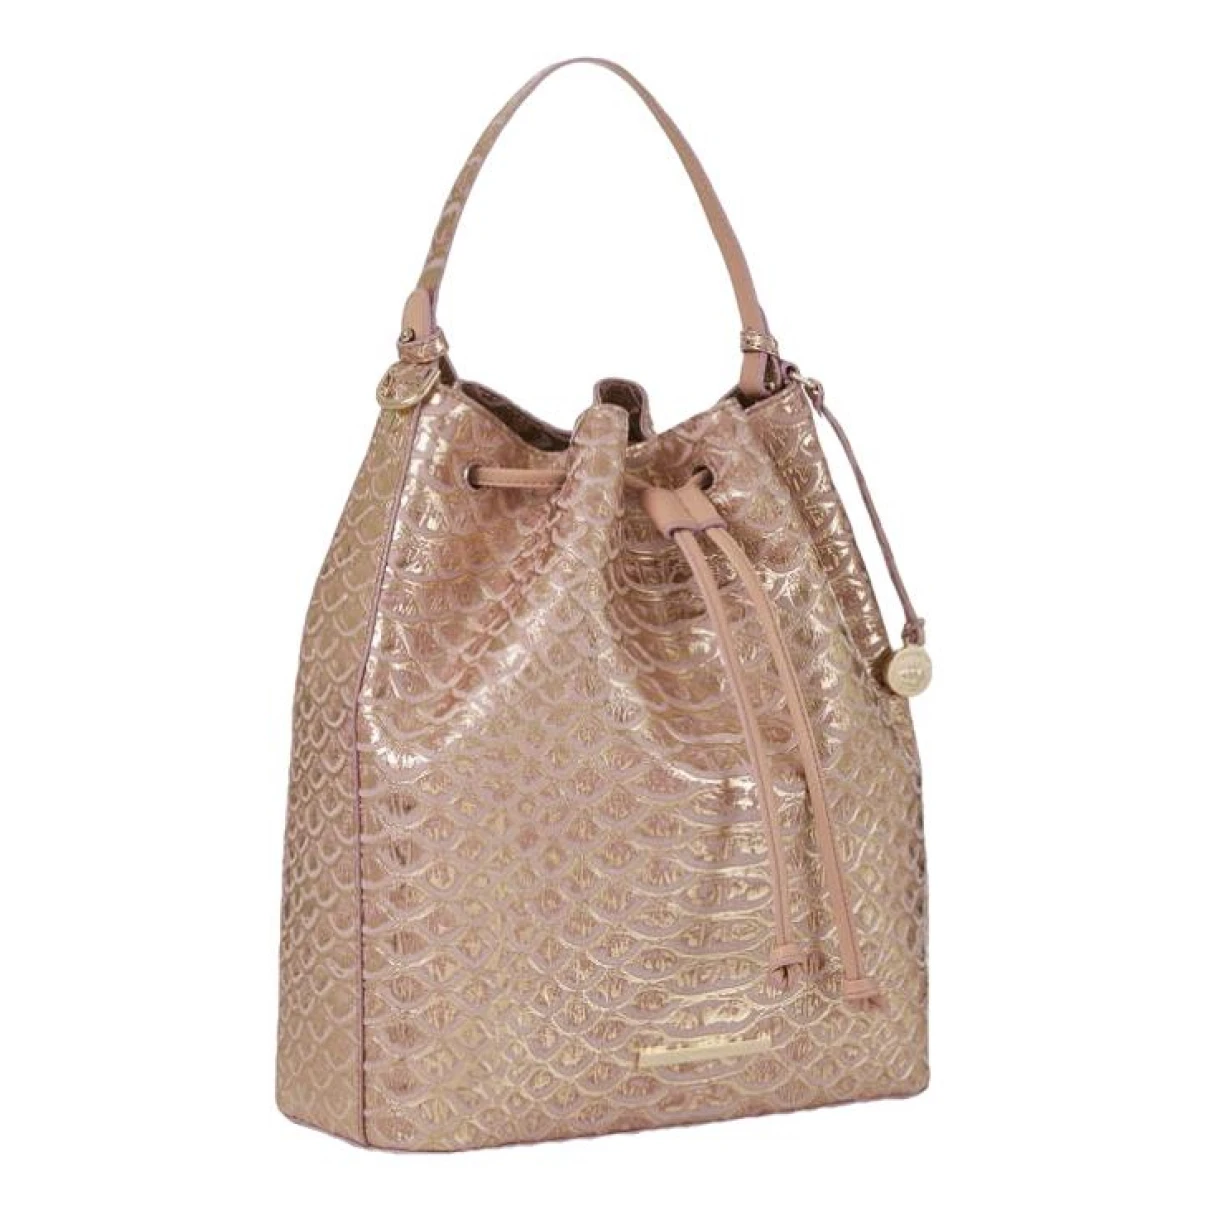 Pre-owned Brahmin Leather Handbag In Pink